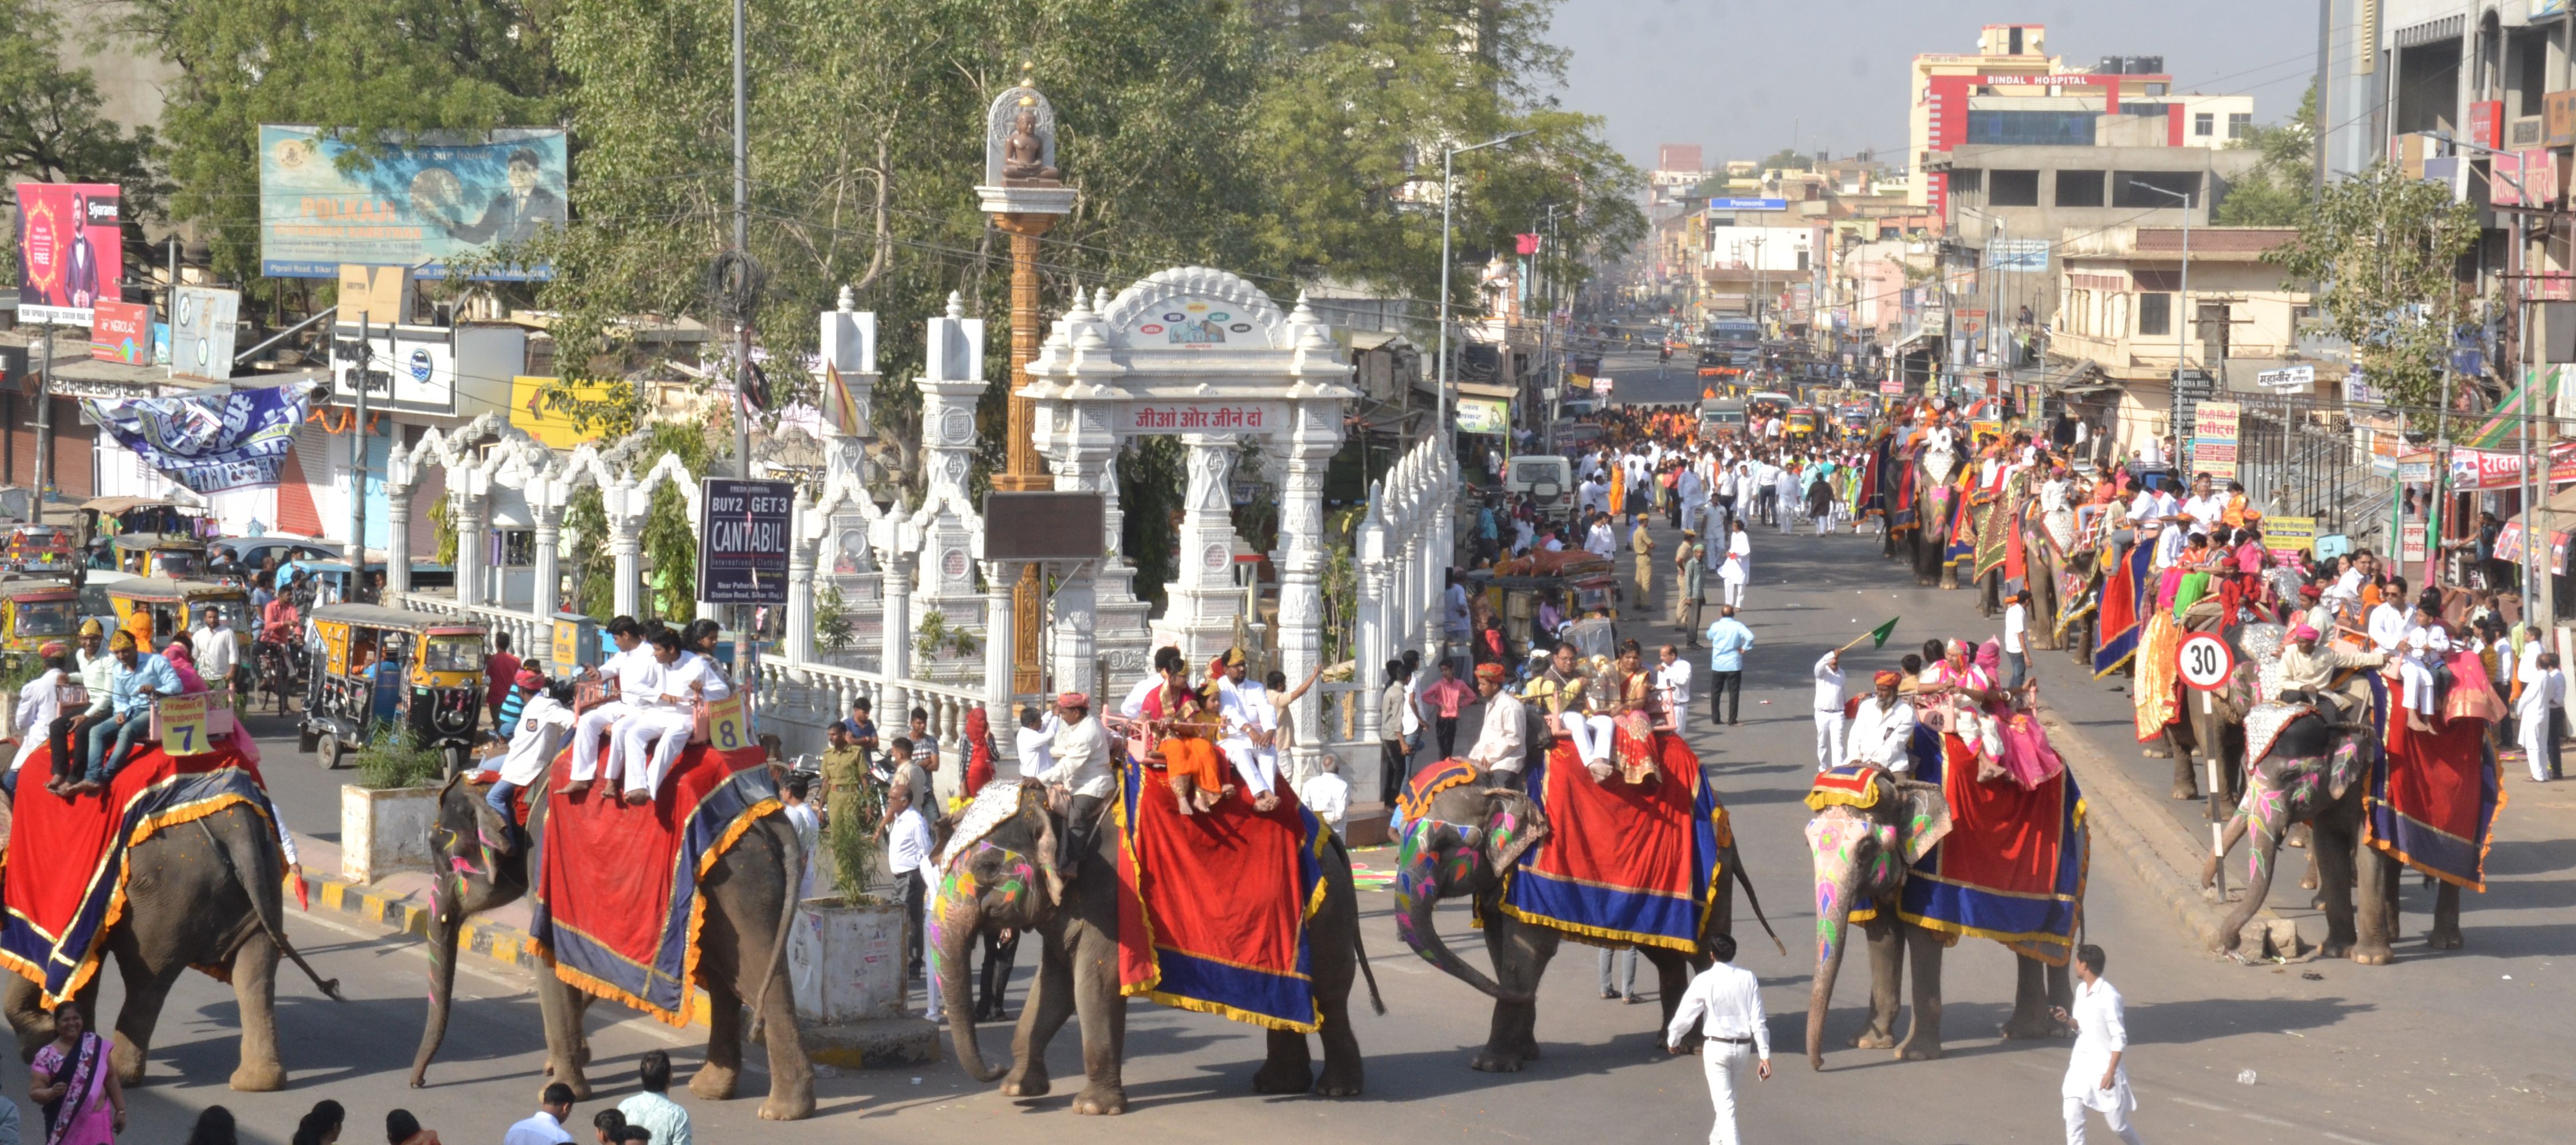 Sikar Jain Samaj Shobha Yatra with elephants